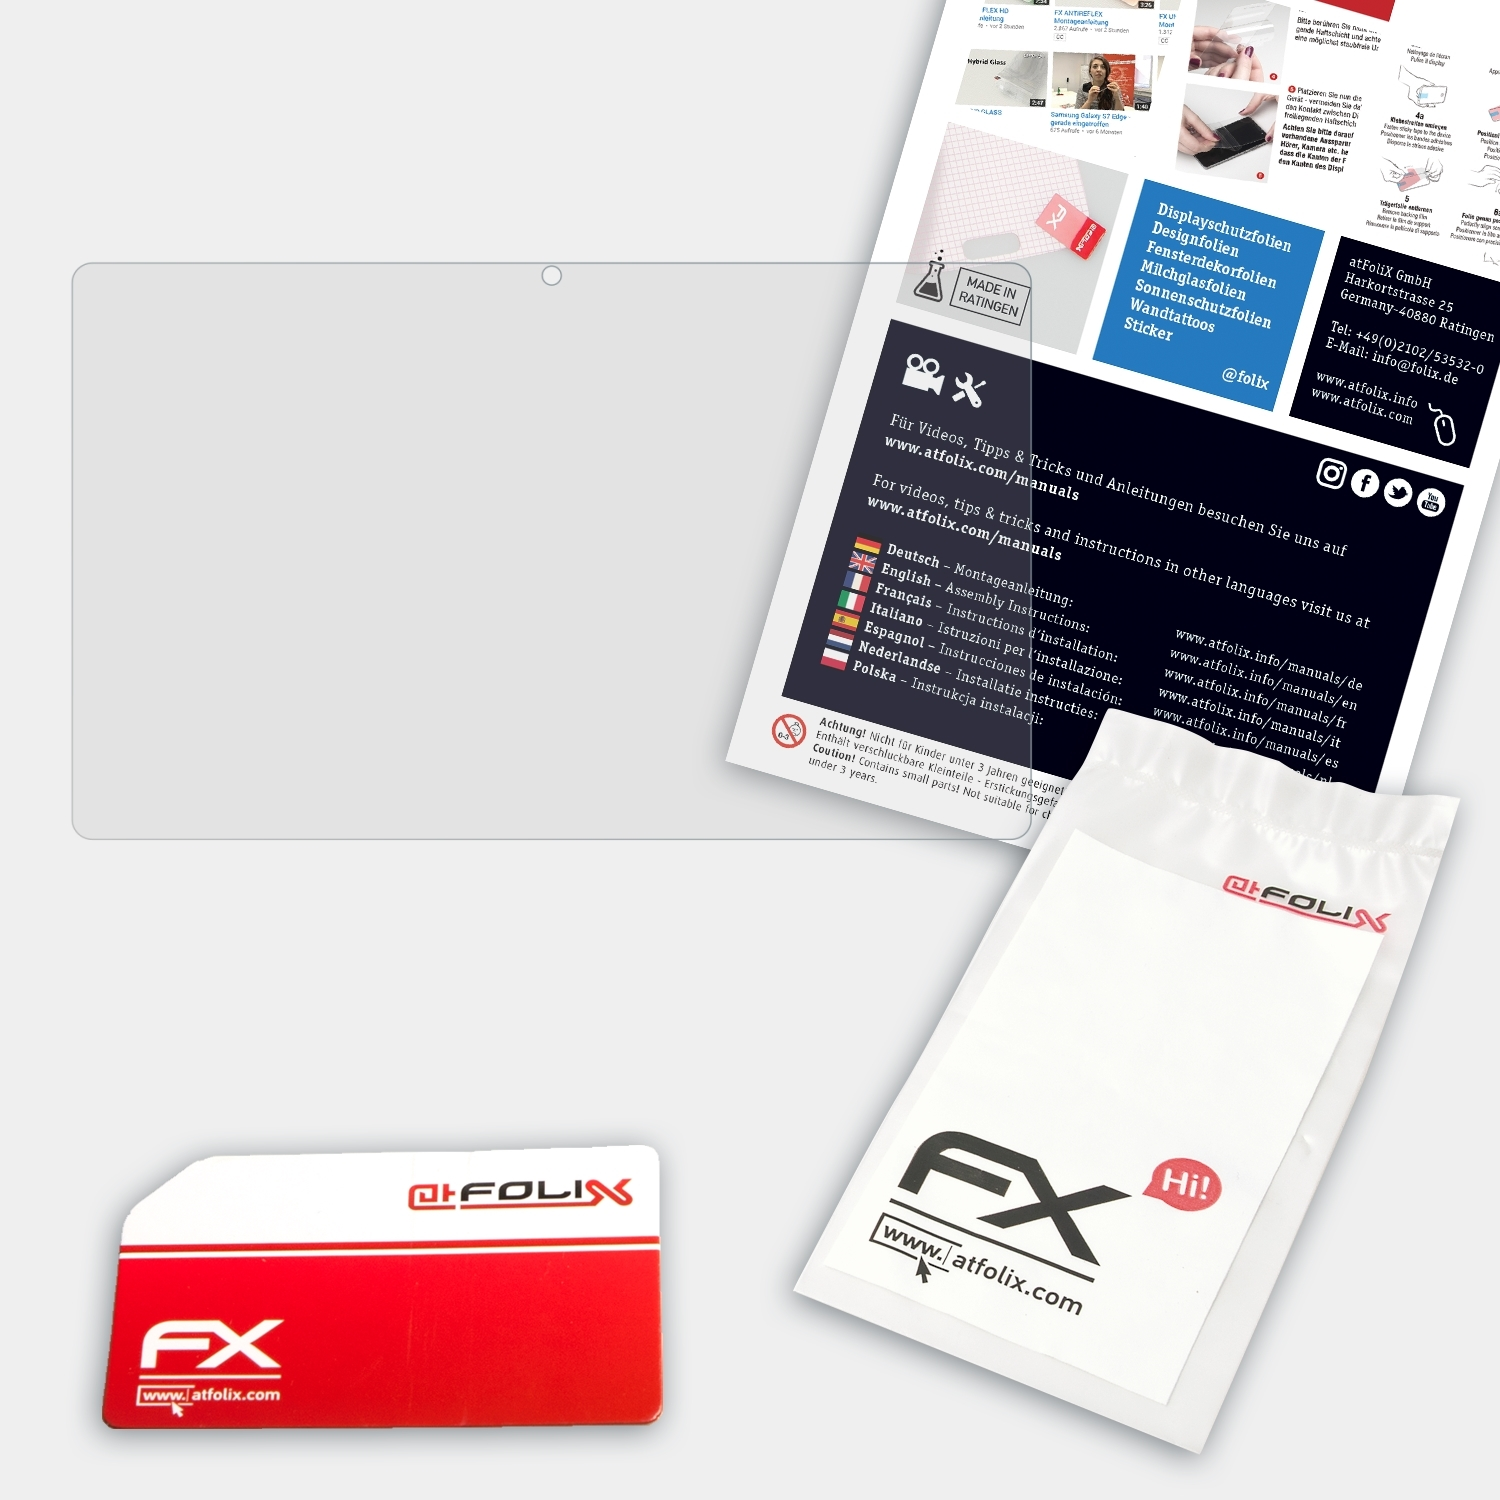 FX-Antireflex Displayschutz(für OptiPlex Dell 9030) ATFOLIX